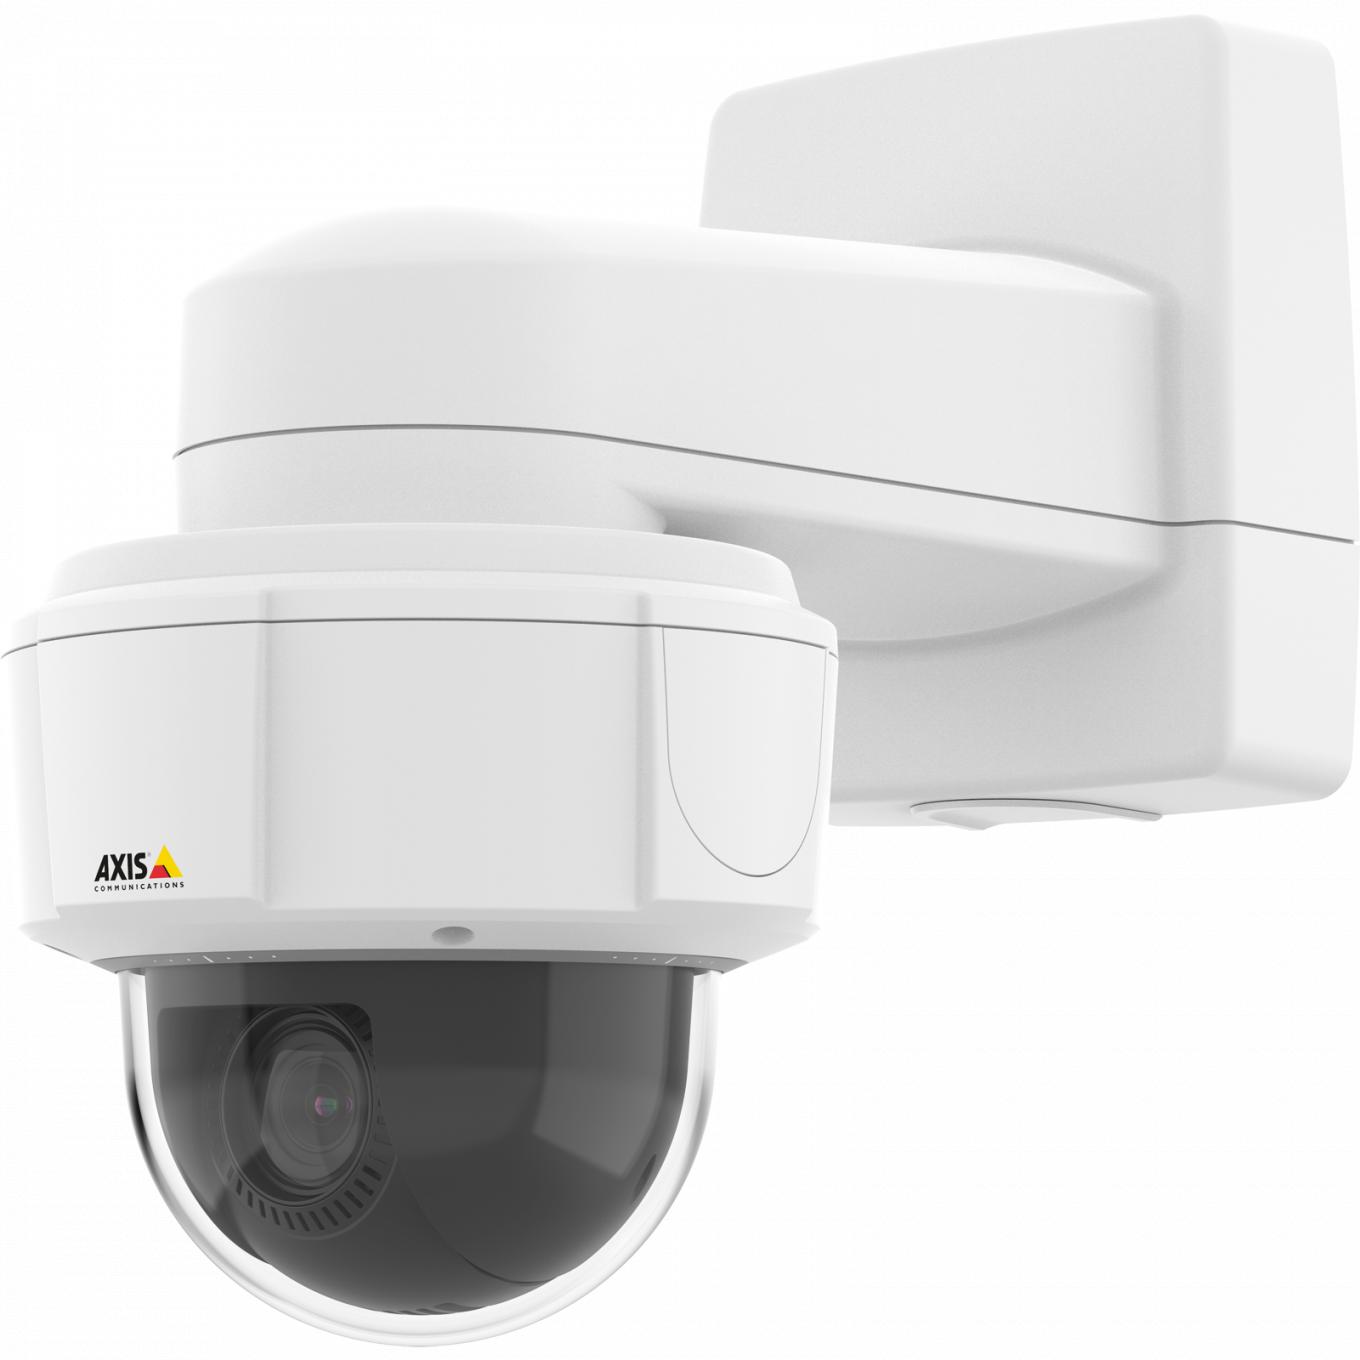  La caméra IP AXIS M5525-E dispose d'une fonction panoramique à 360° en continu et d'Axis Zipstream